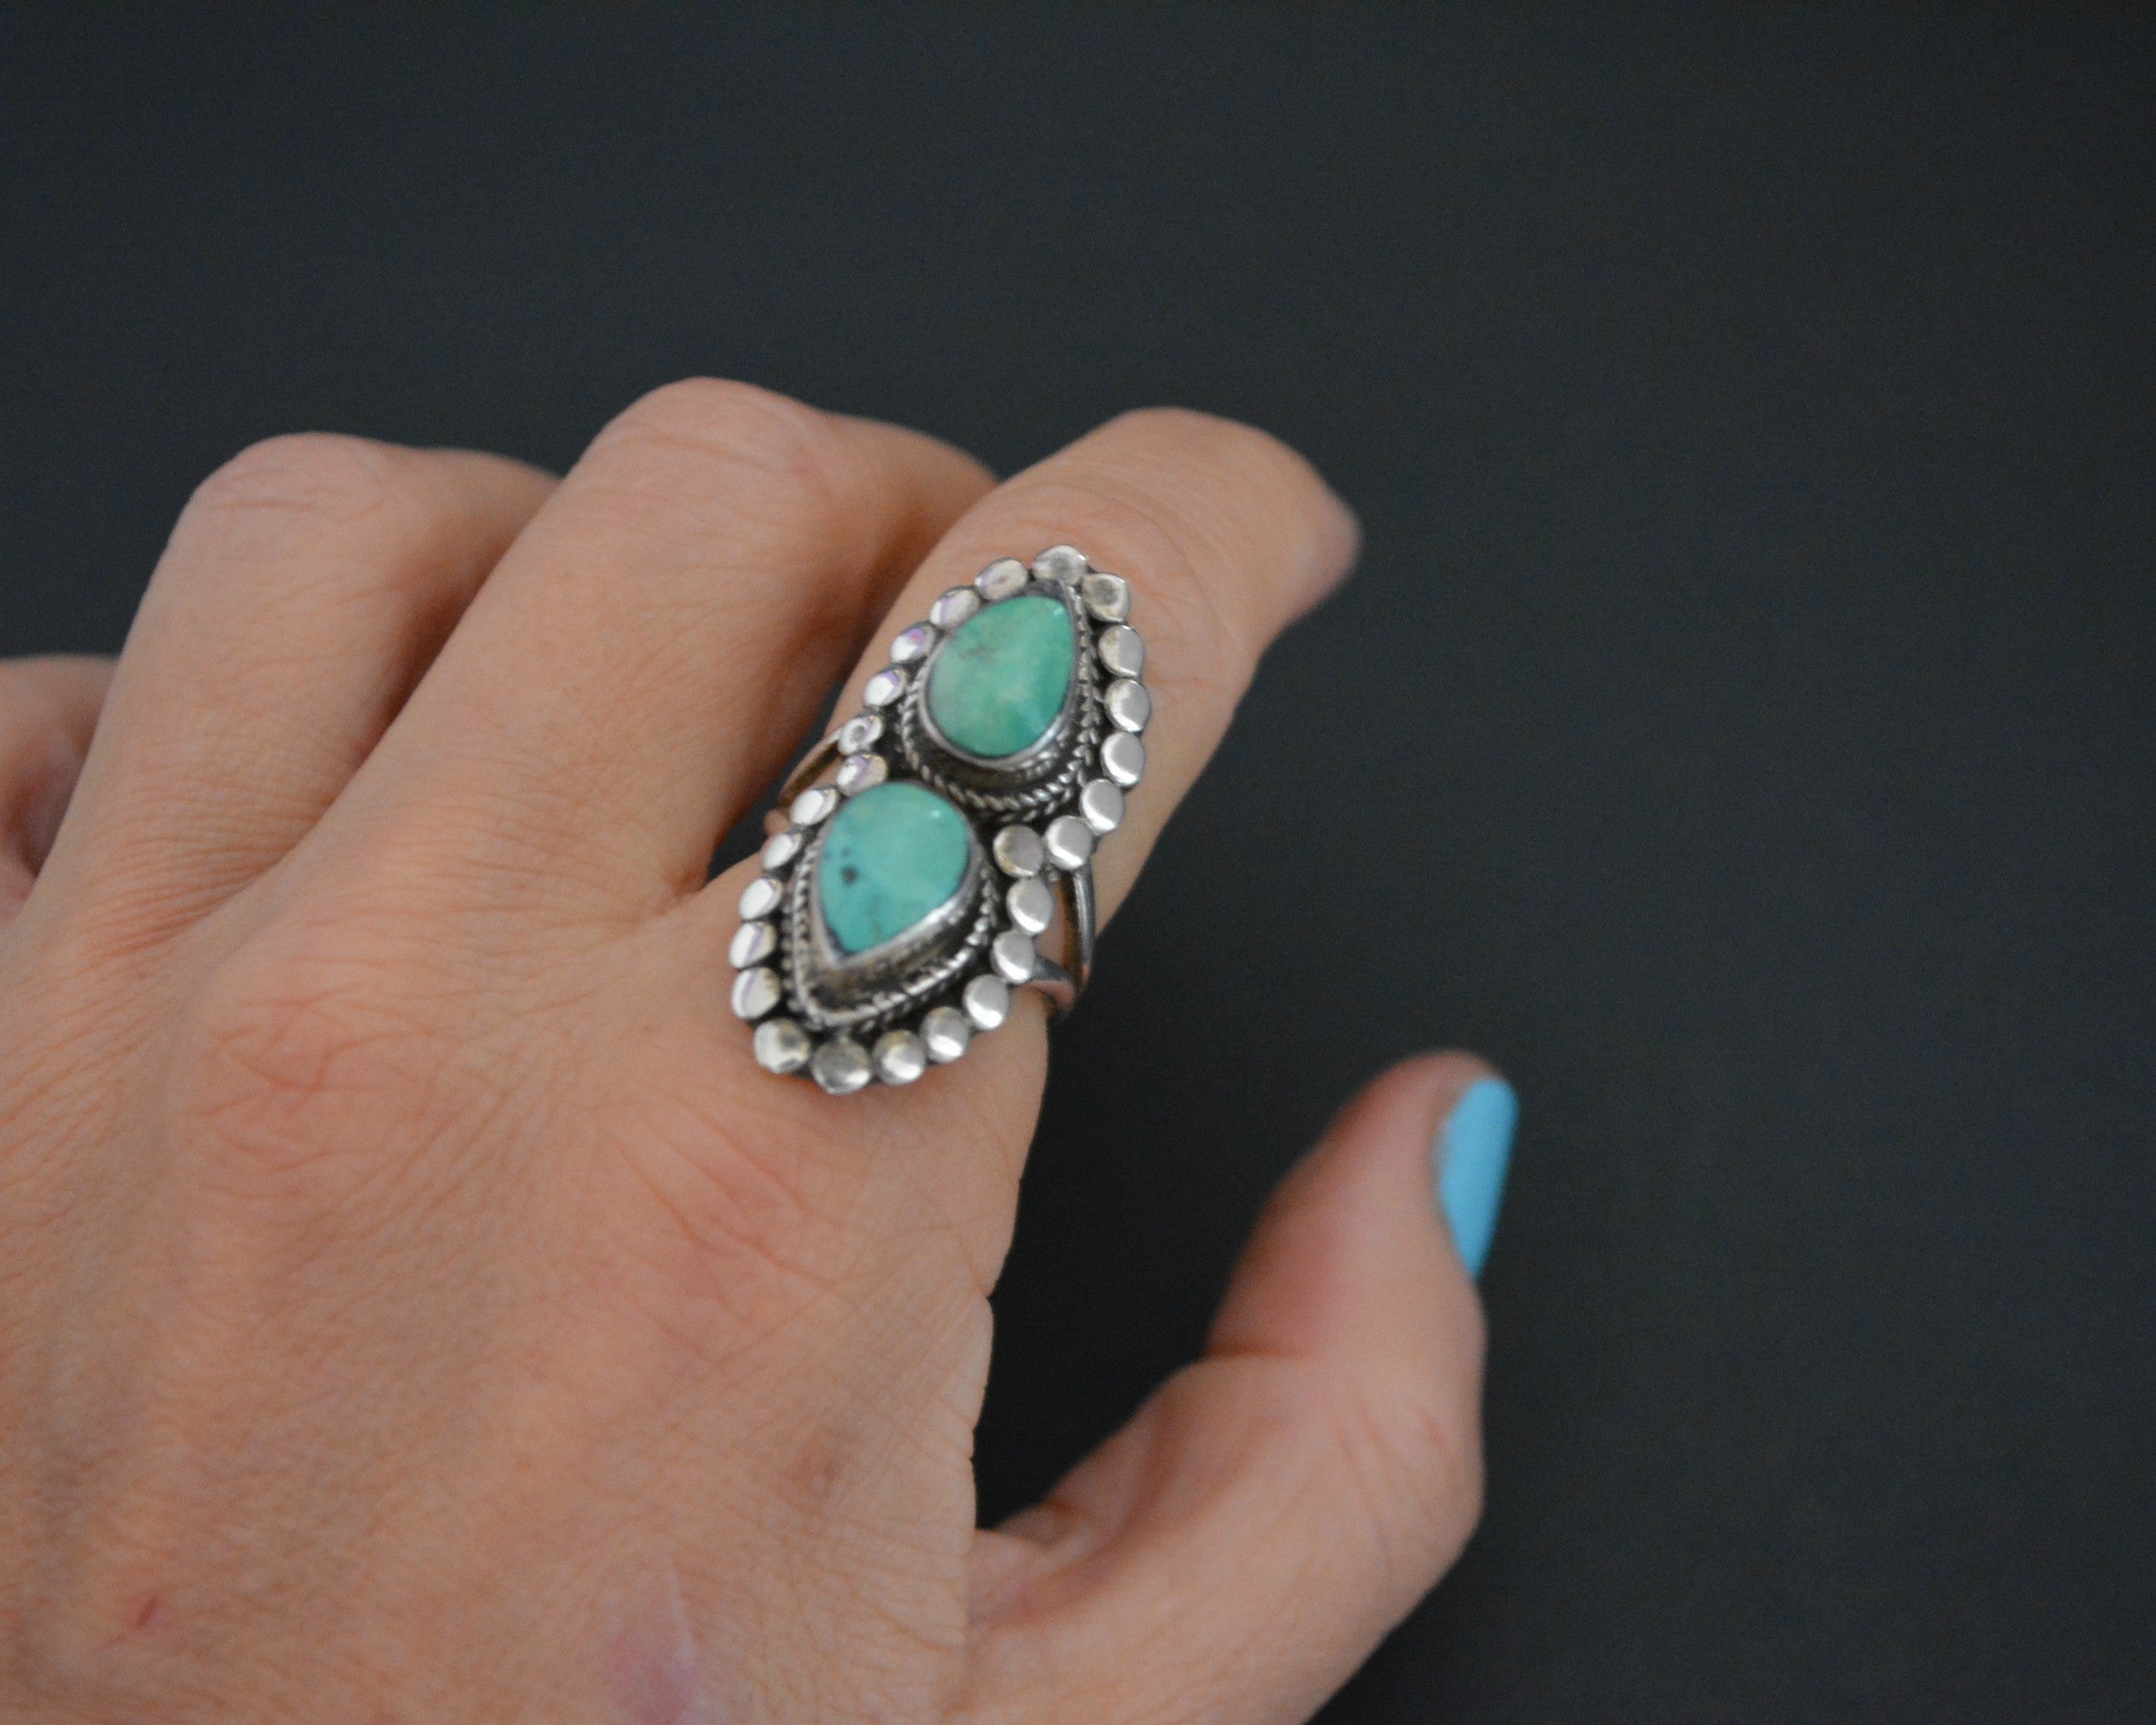 Nepali Turquoise Ring - Size 6.5